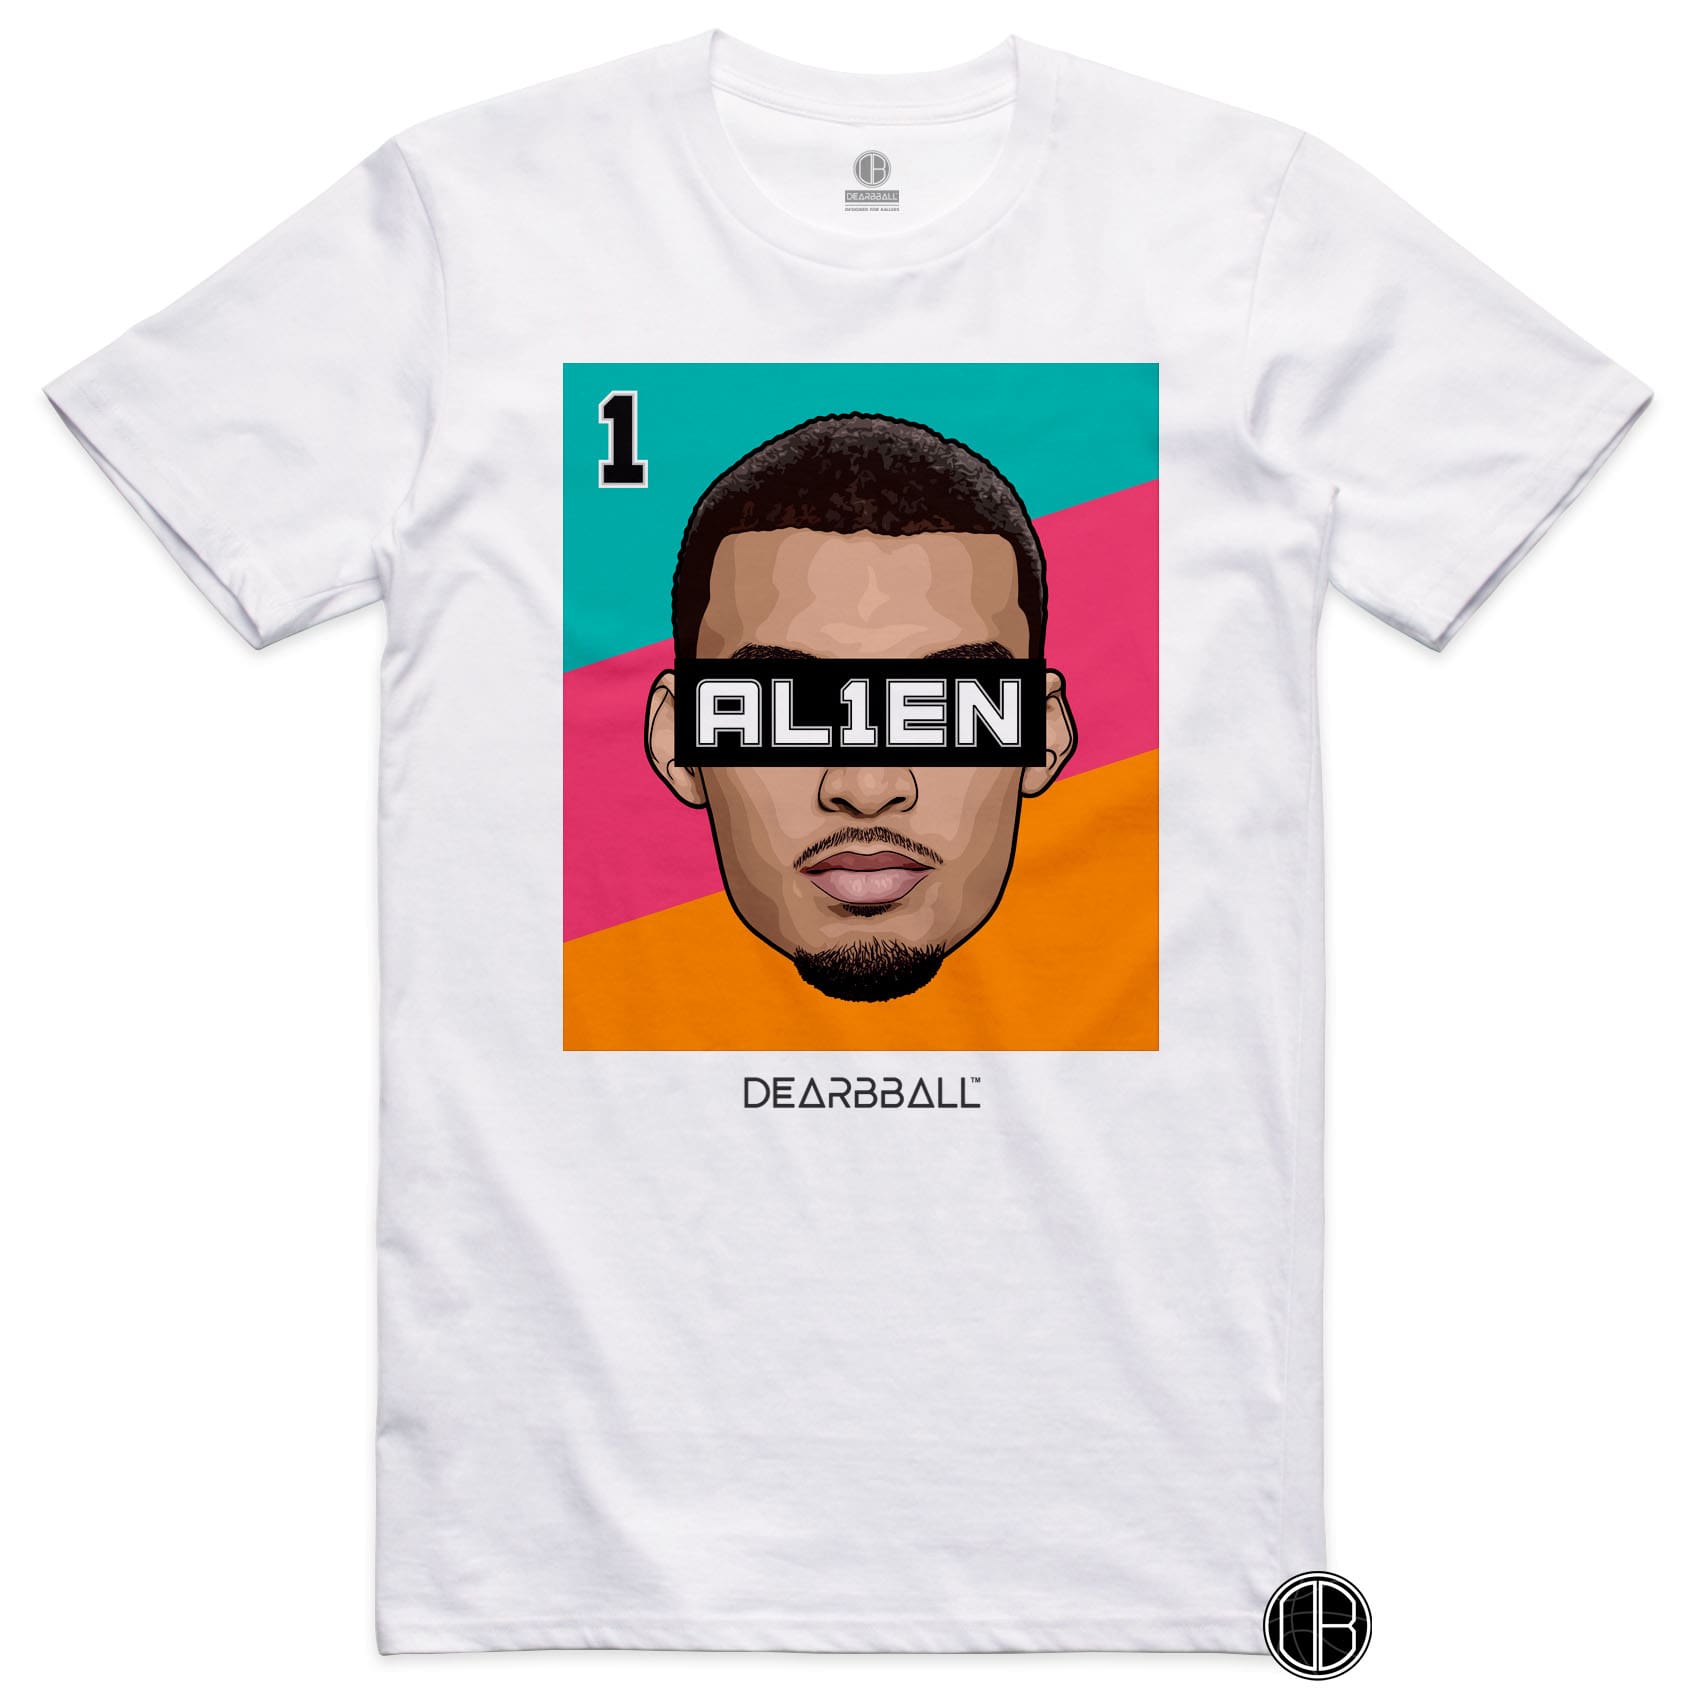 Camiseta DearBBall-AL1EN 1 Edición Fiesta 